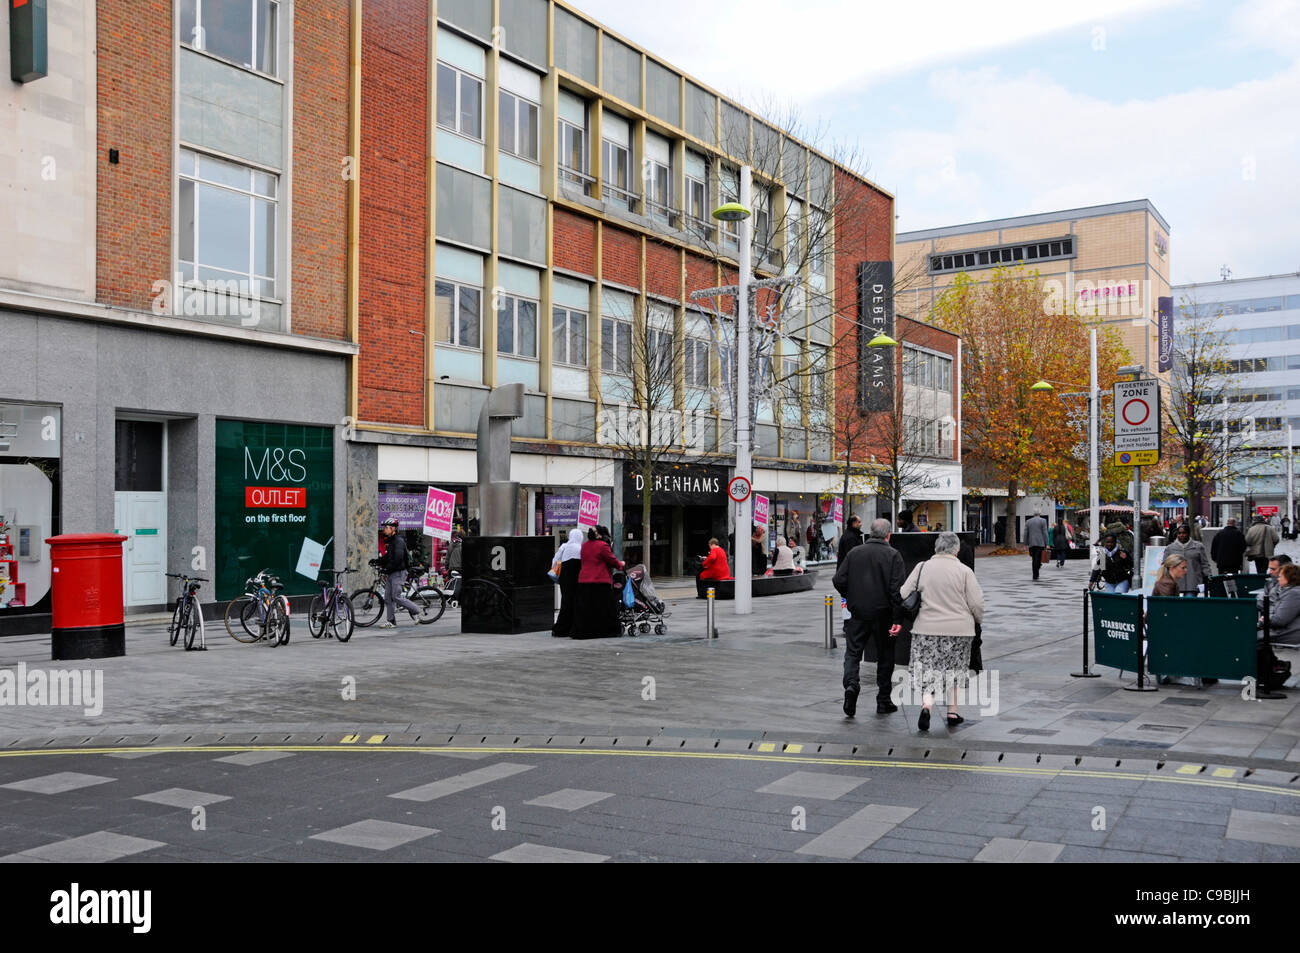 Les amateurs de shopping et les gens de la ville piétonne de Slough sont à l'automne Centre High Street Berkshire Angleterre Royaume-Uni Banque D'Images